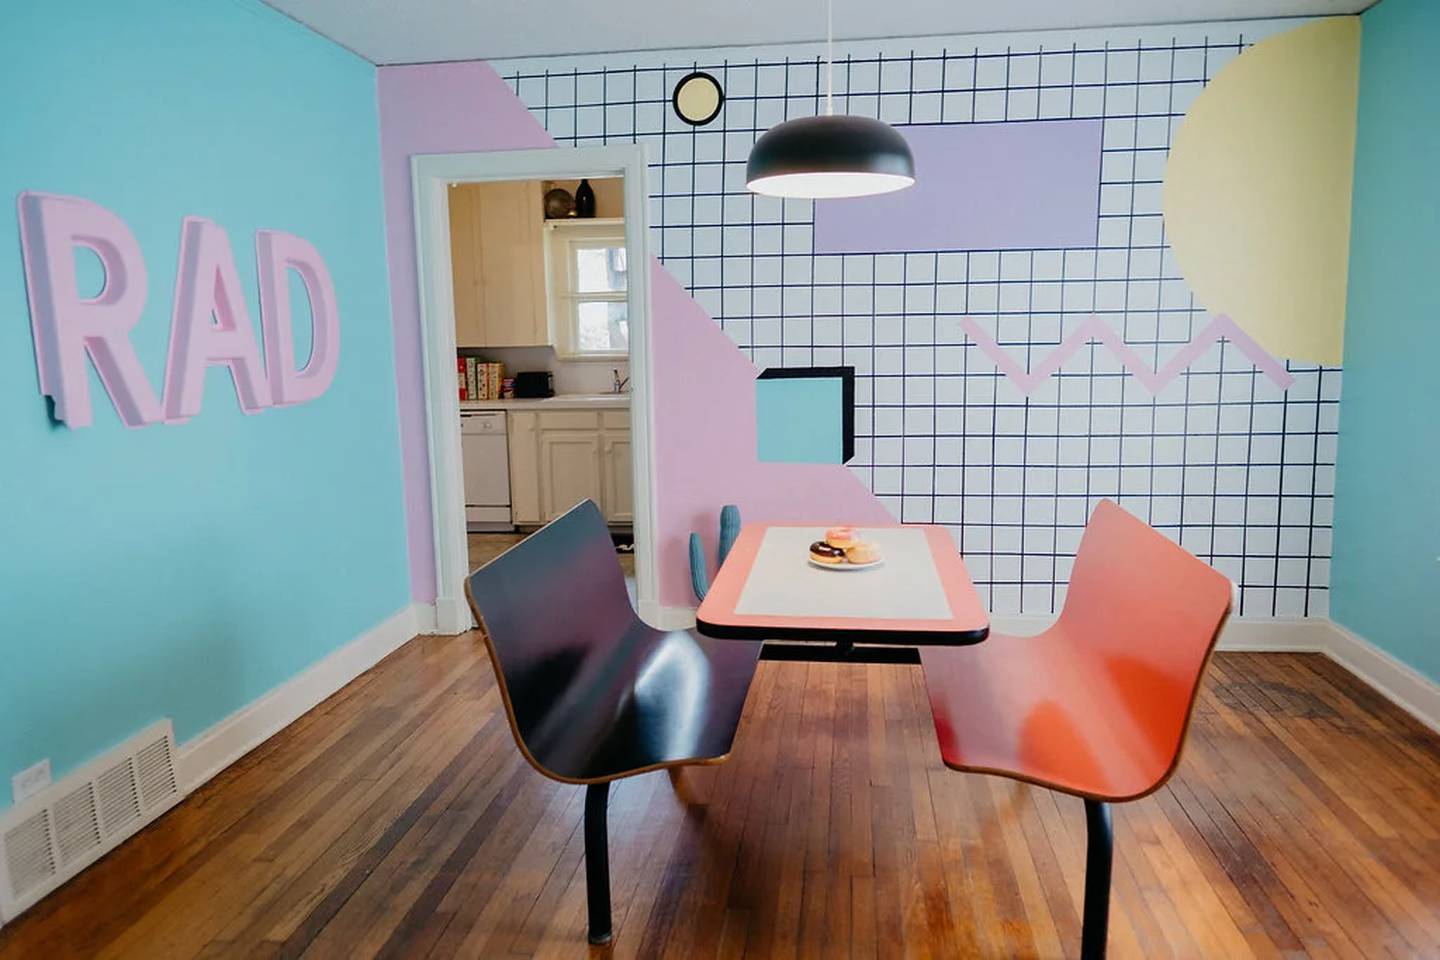 Los muebles vintage y una atrevida mezcla de colores pastel impregnan este lugar con una sensación de diversión nostálgica. (Airbnb)dfd